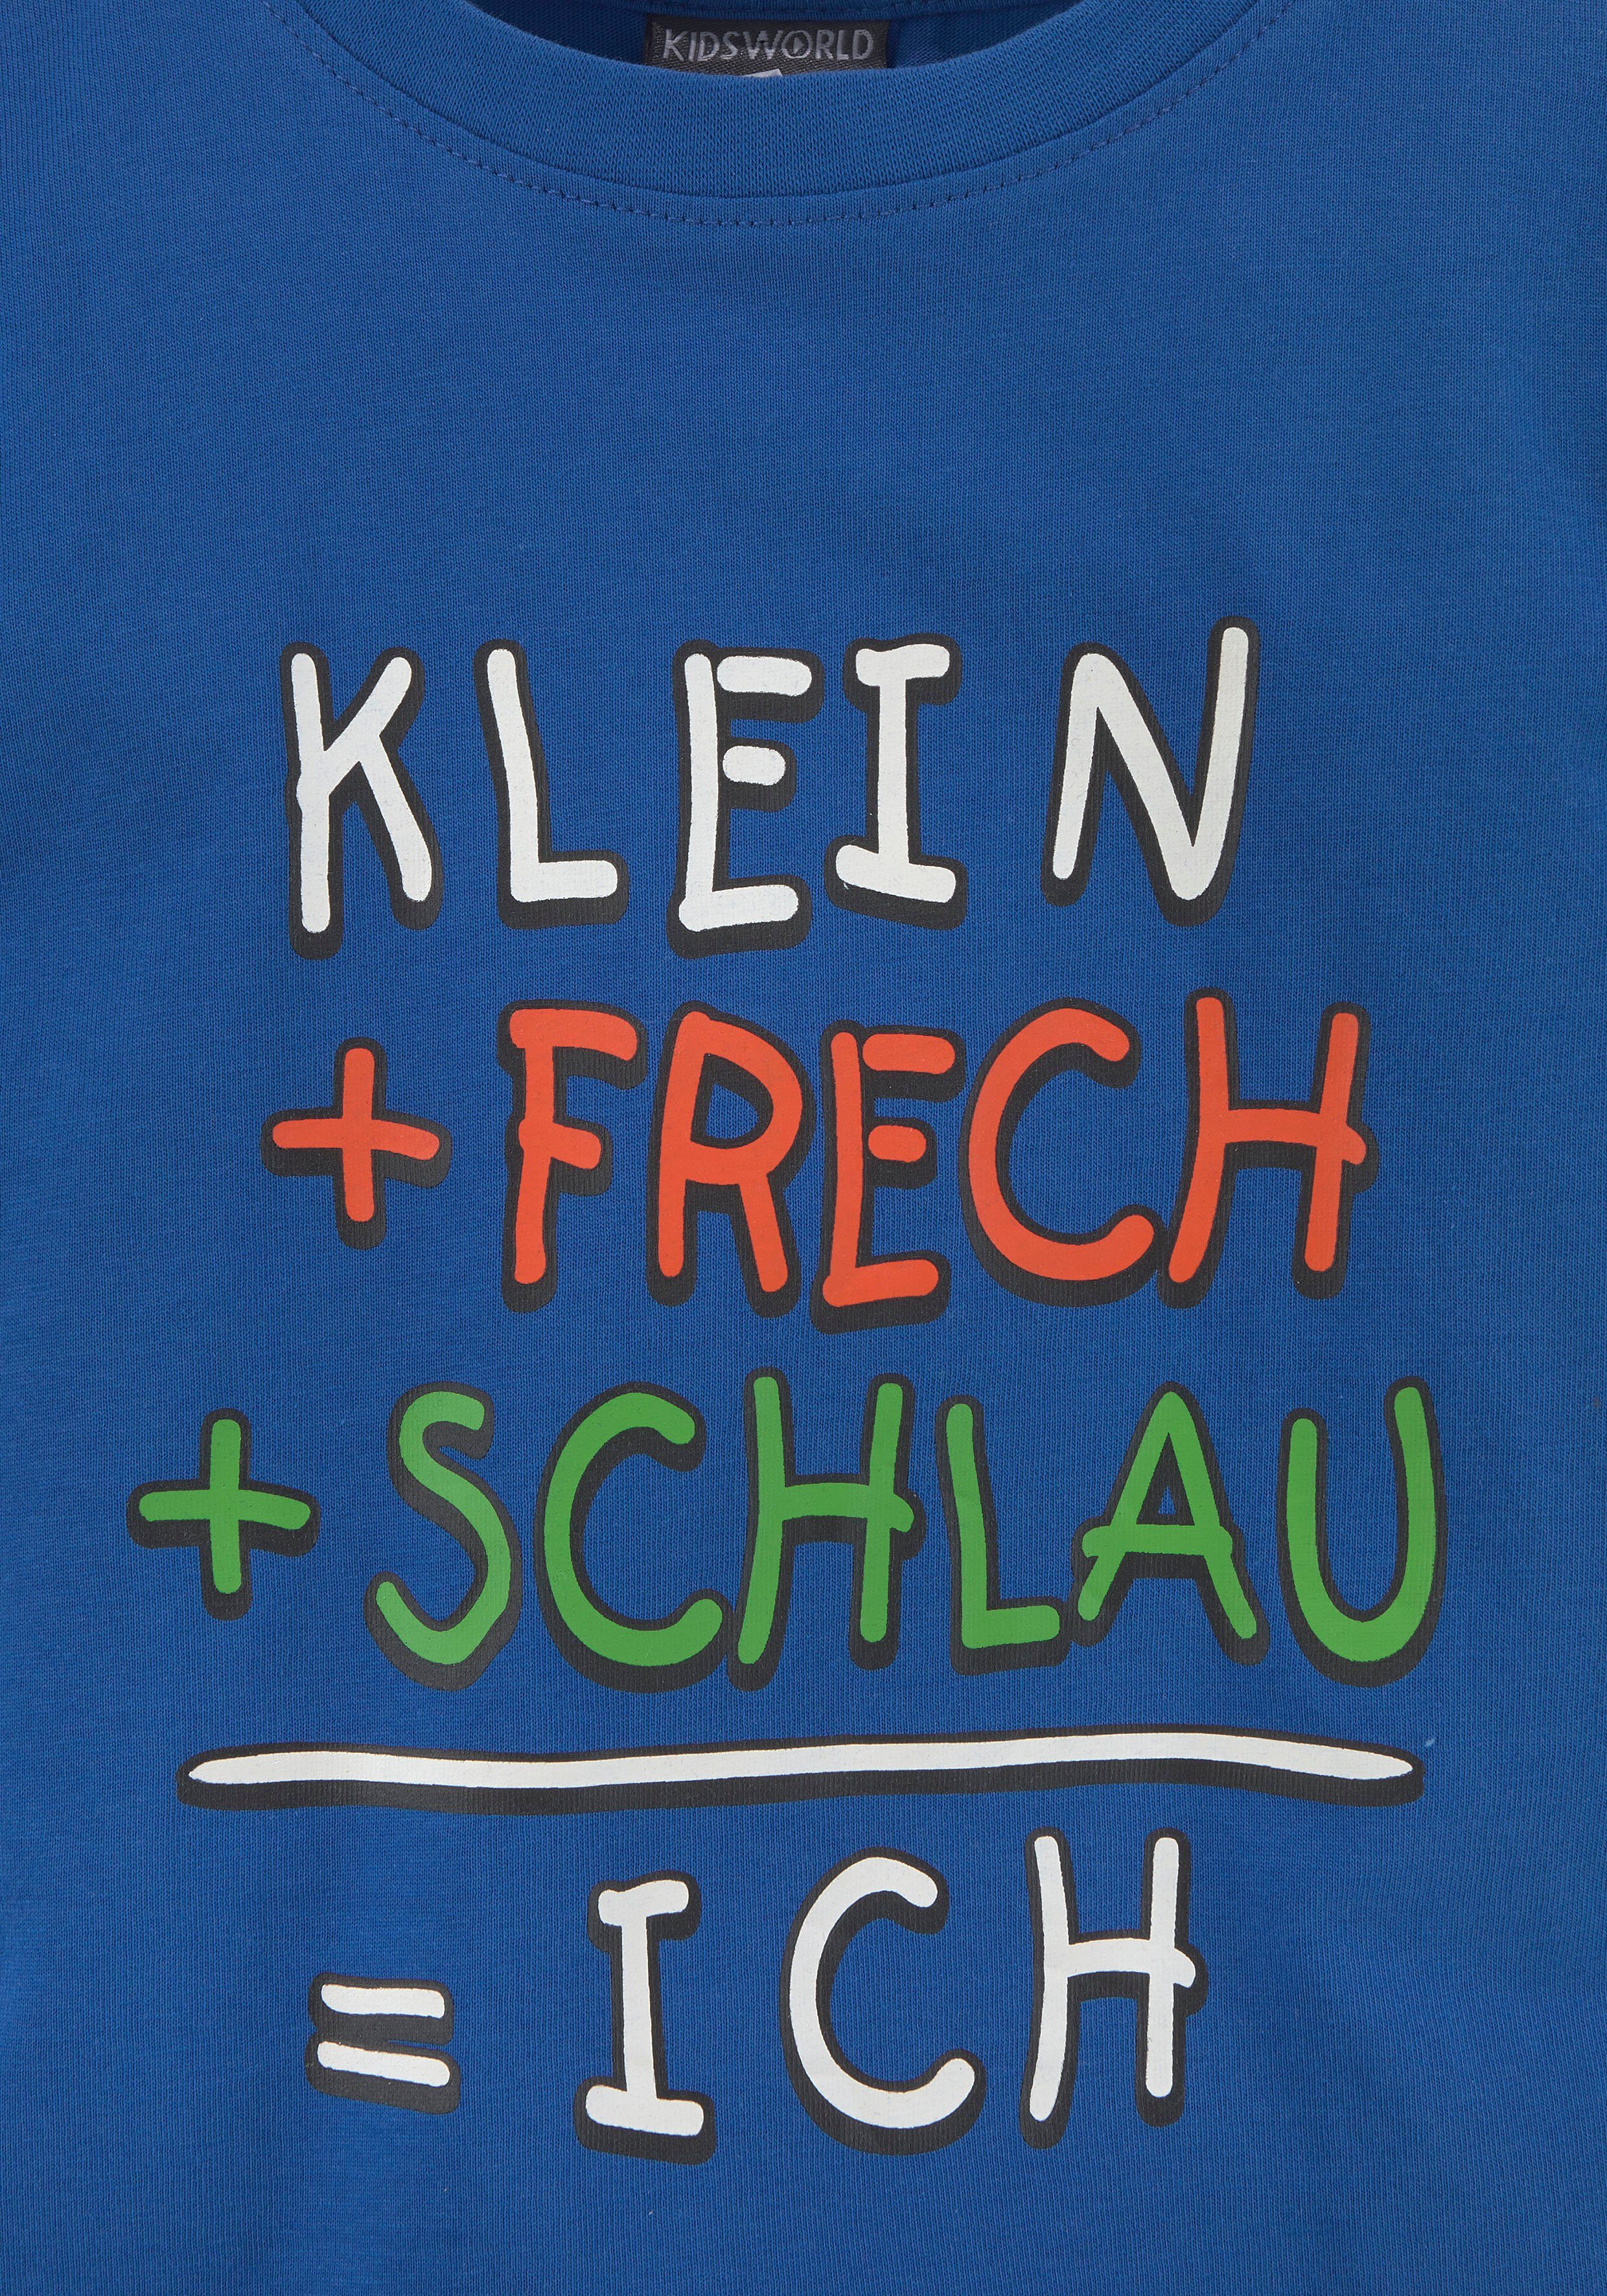 KIDSWORLD KLEIN+FRECH+SCHLAU... T-Shirt